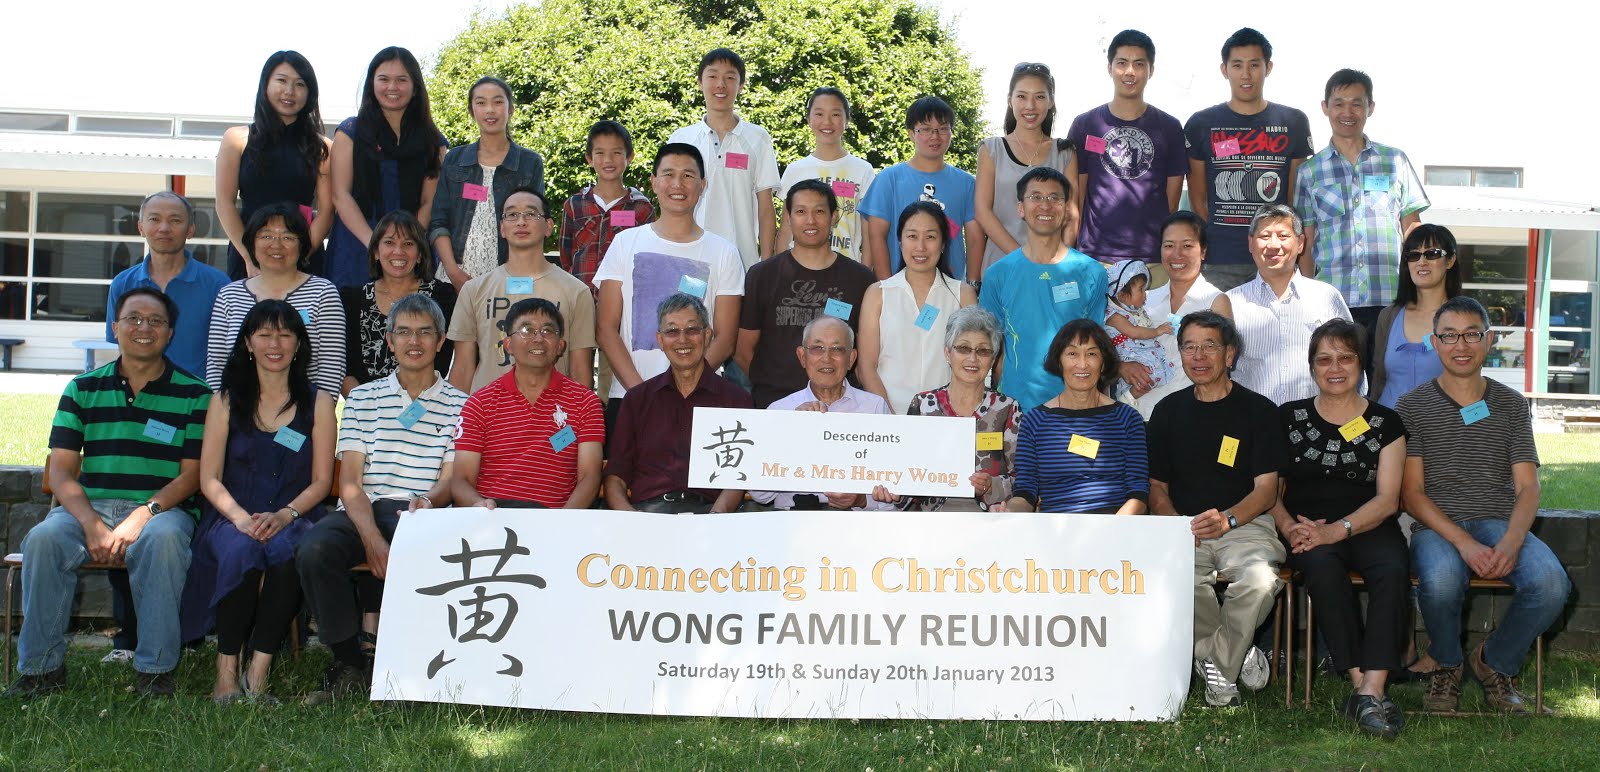 Descendants of Mr & Mrs Harry Wong